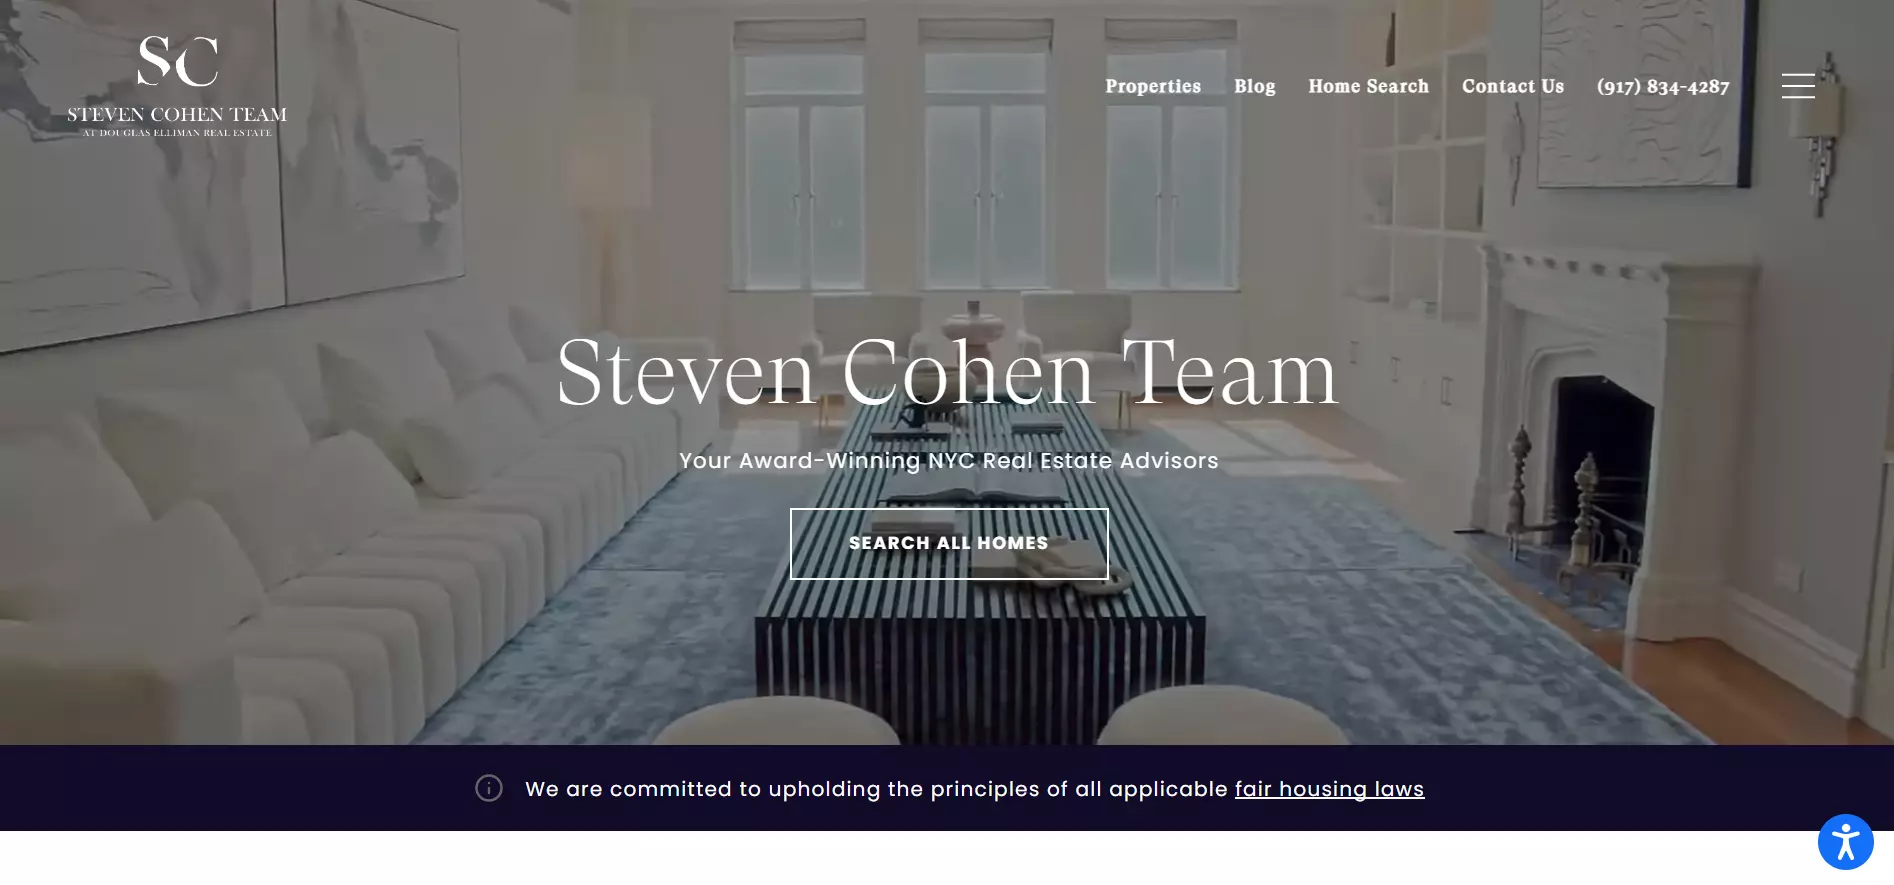 Steven Cohen Team Landing Page PPC